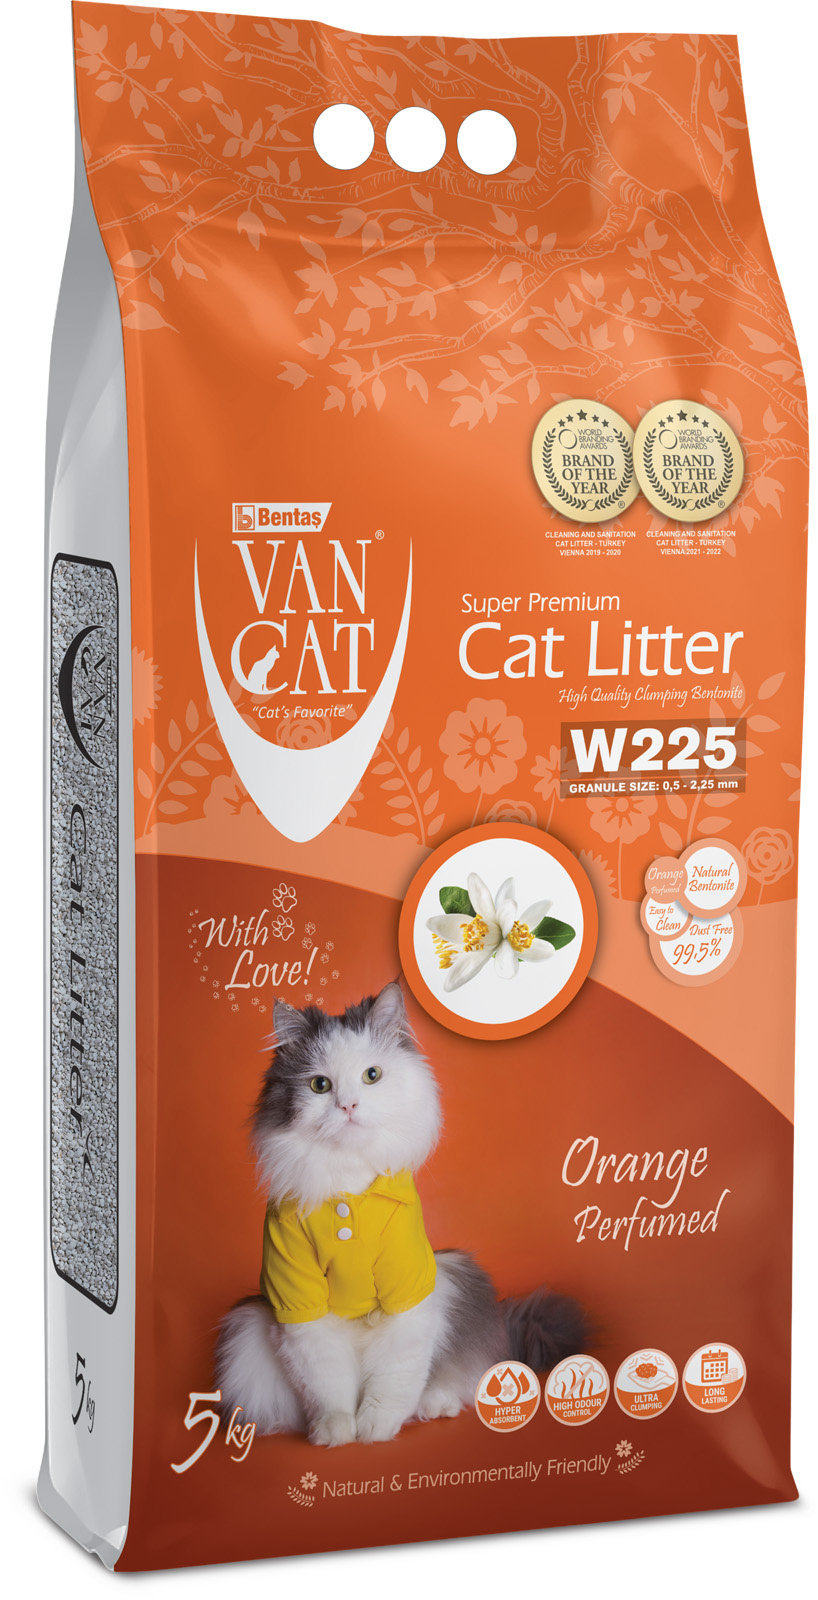 Van Cat Van Cat комкующийся наполнитель без пыли с ароматом апельсина, пакет (5 кг) van cat van cat комкующийся наполнитель 100% натуральный без пыли пакет 20 кг